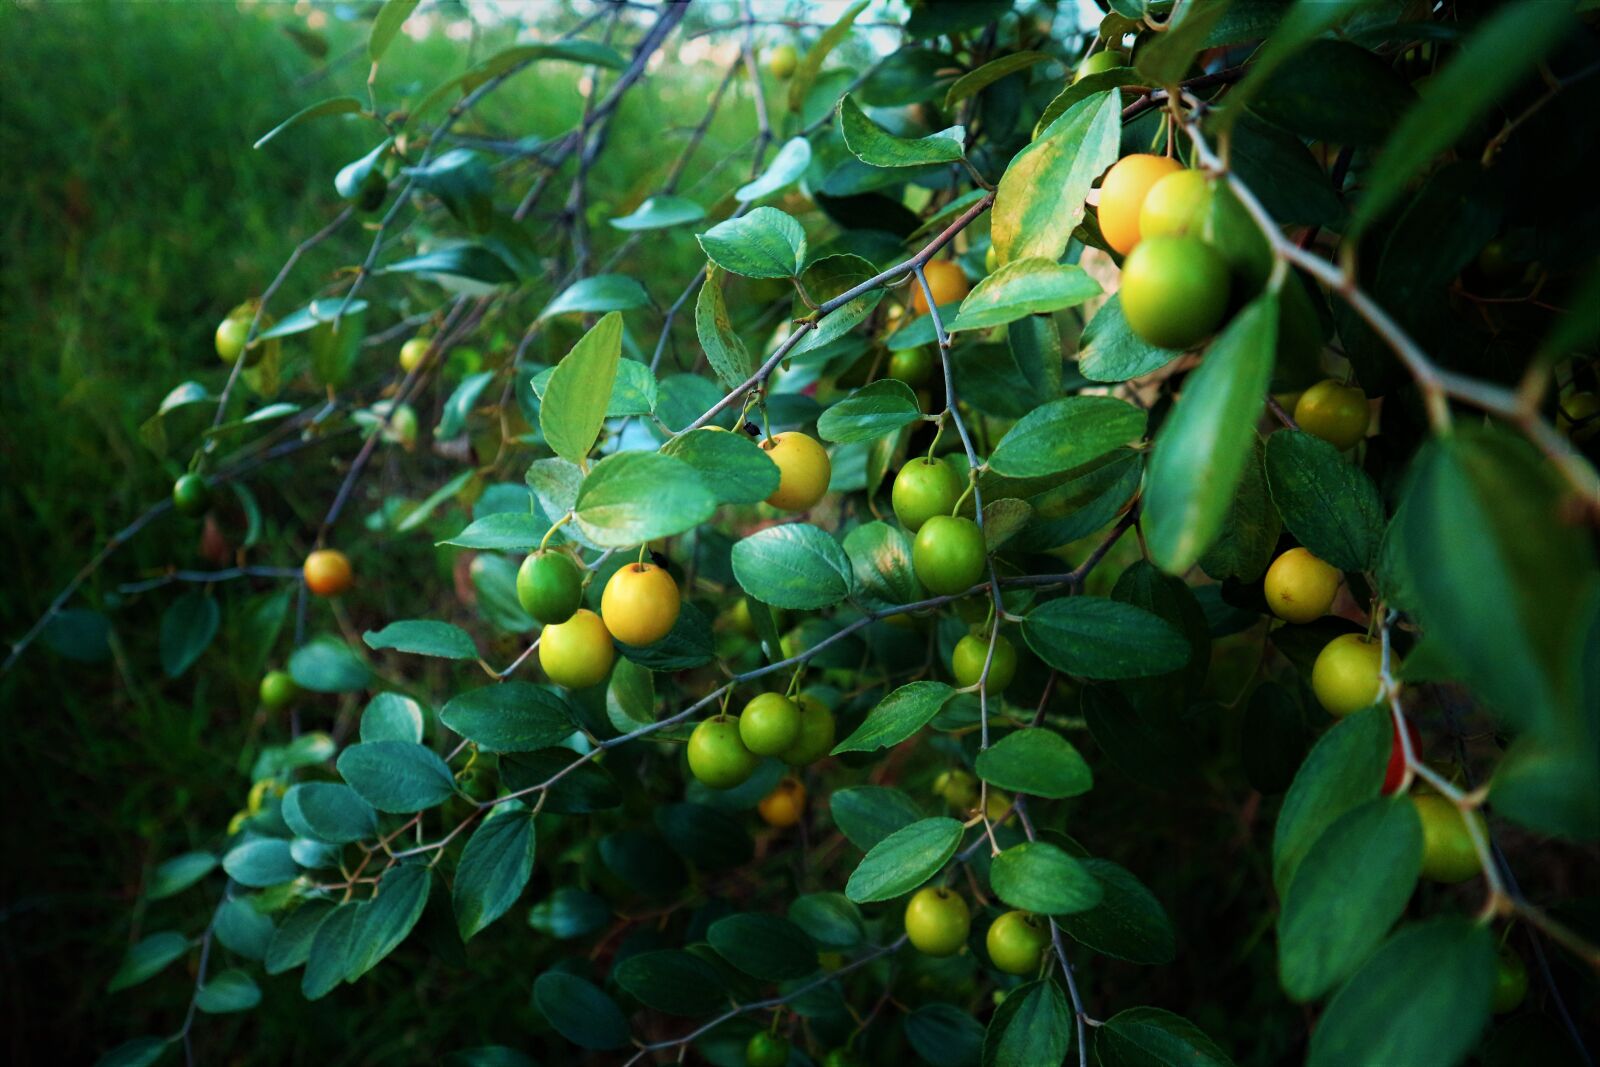 Canon EOS M10 sample photo. Fruit, gree, garden photography